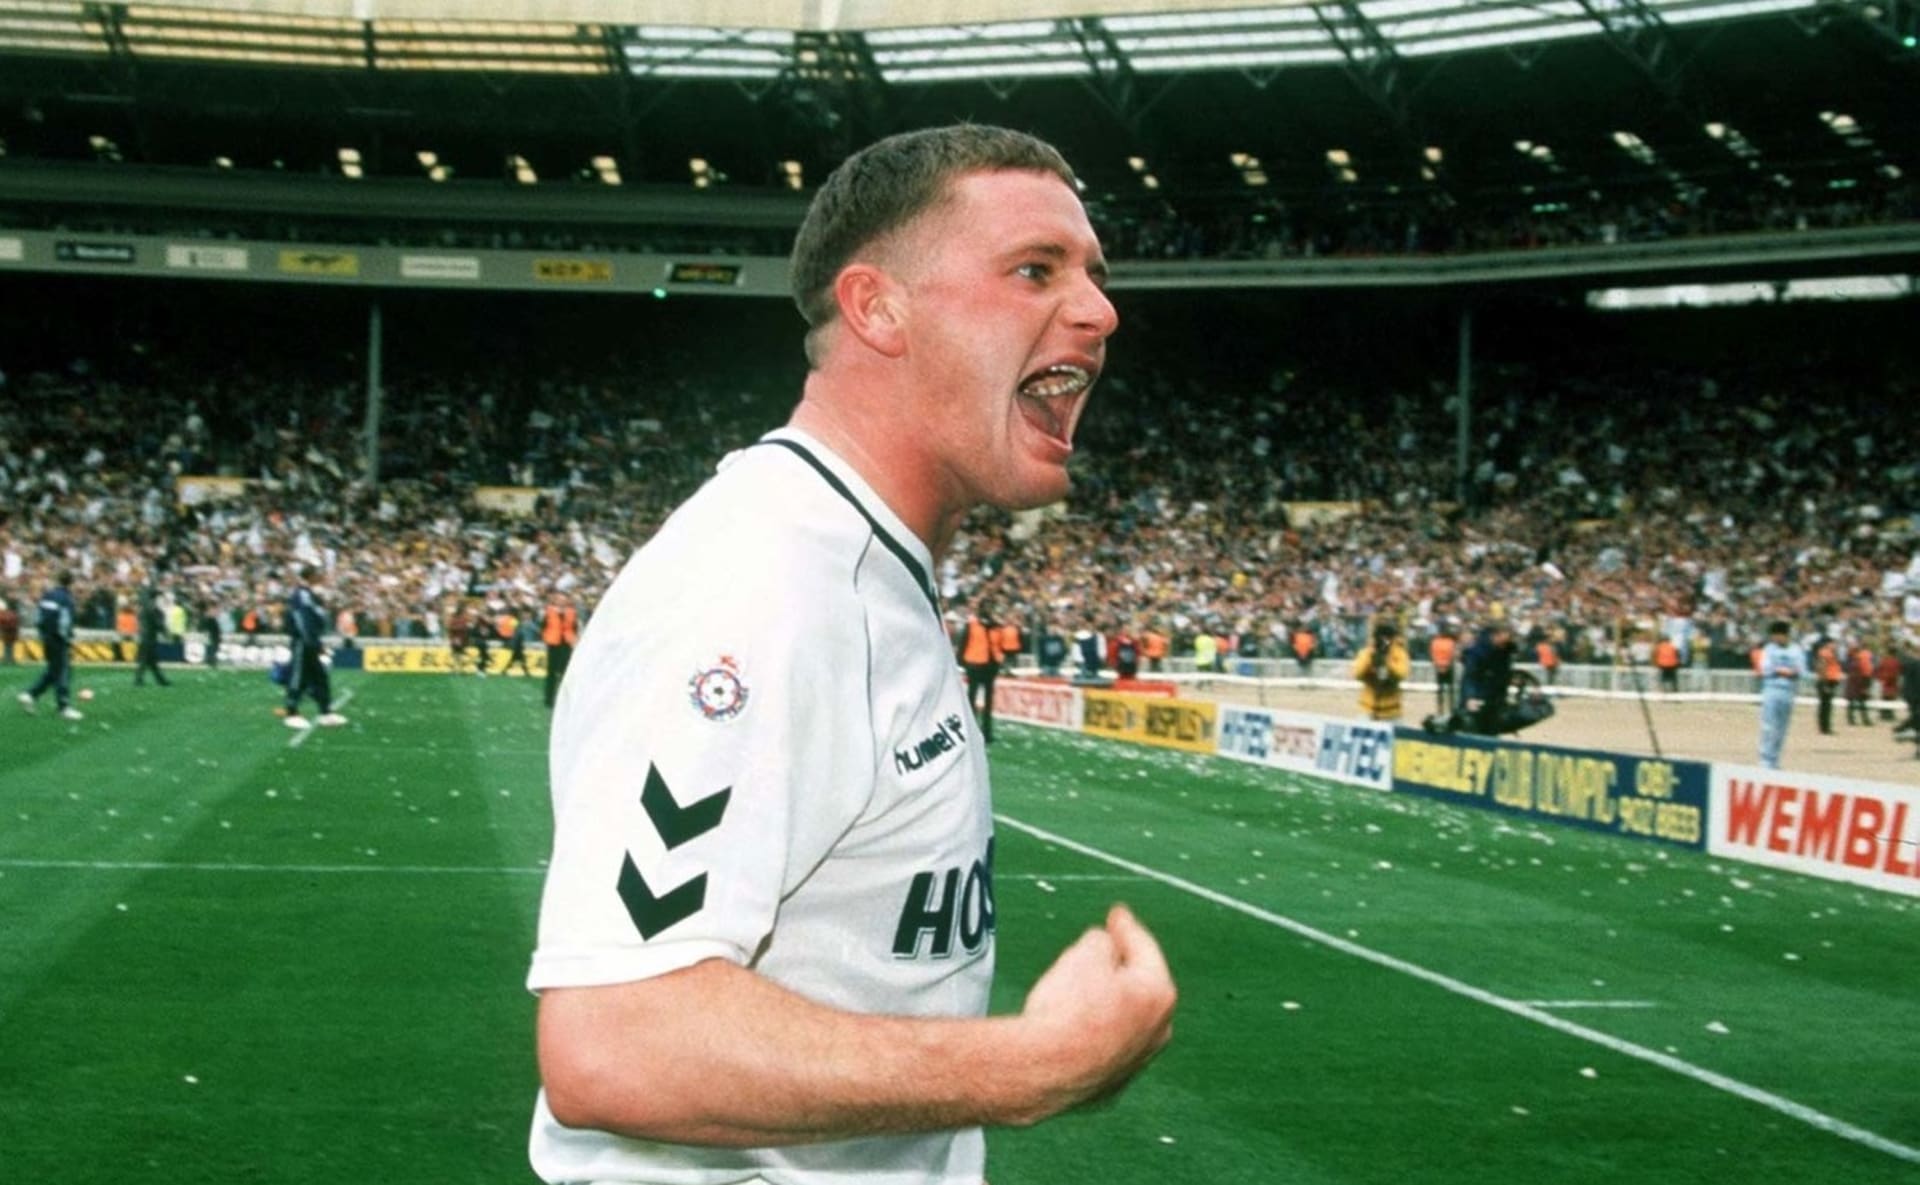 Paul Gascoigne působil na začátku 90. let v Tottenhamu Hotspur. Vzpomíná na první setkání s budoucí hvězdou Royem Keanem, kterému ze zápasu udělal peklo.